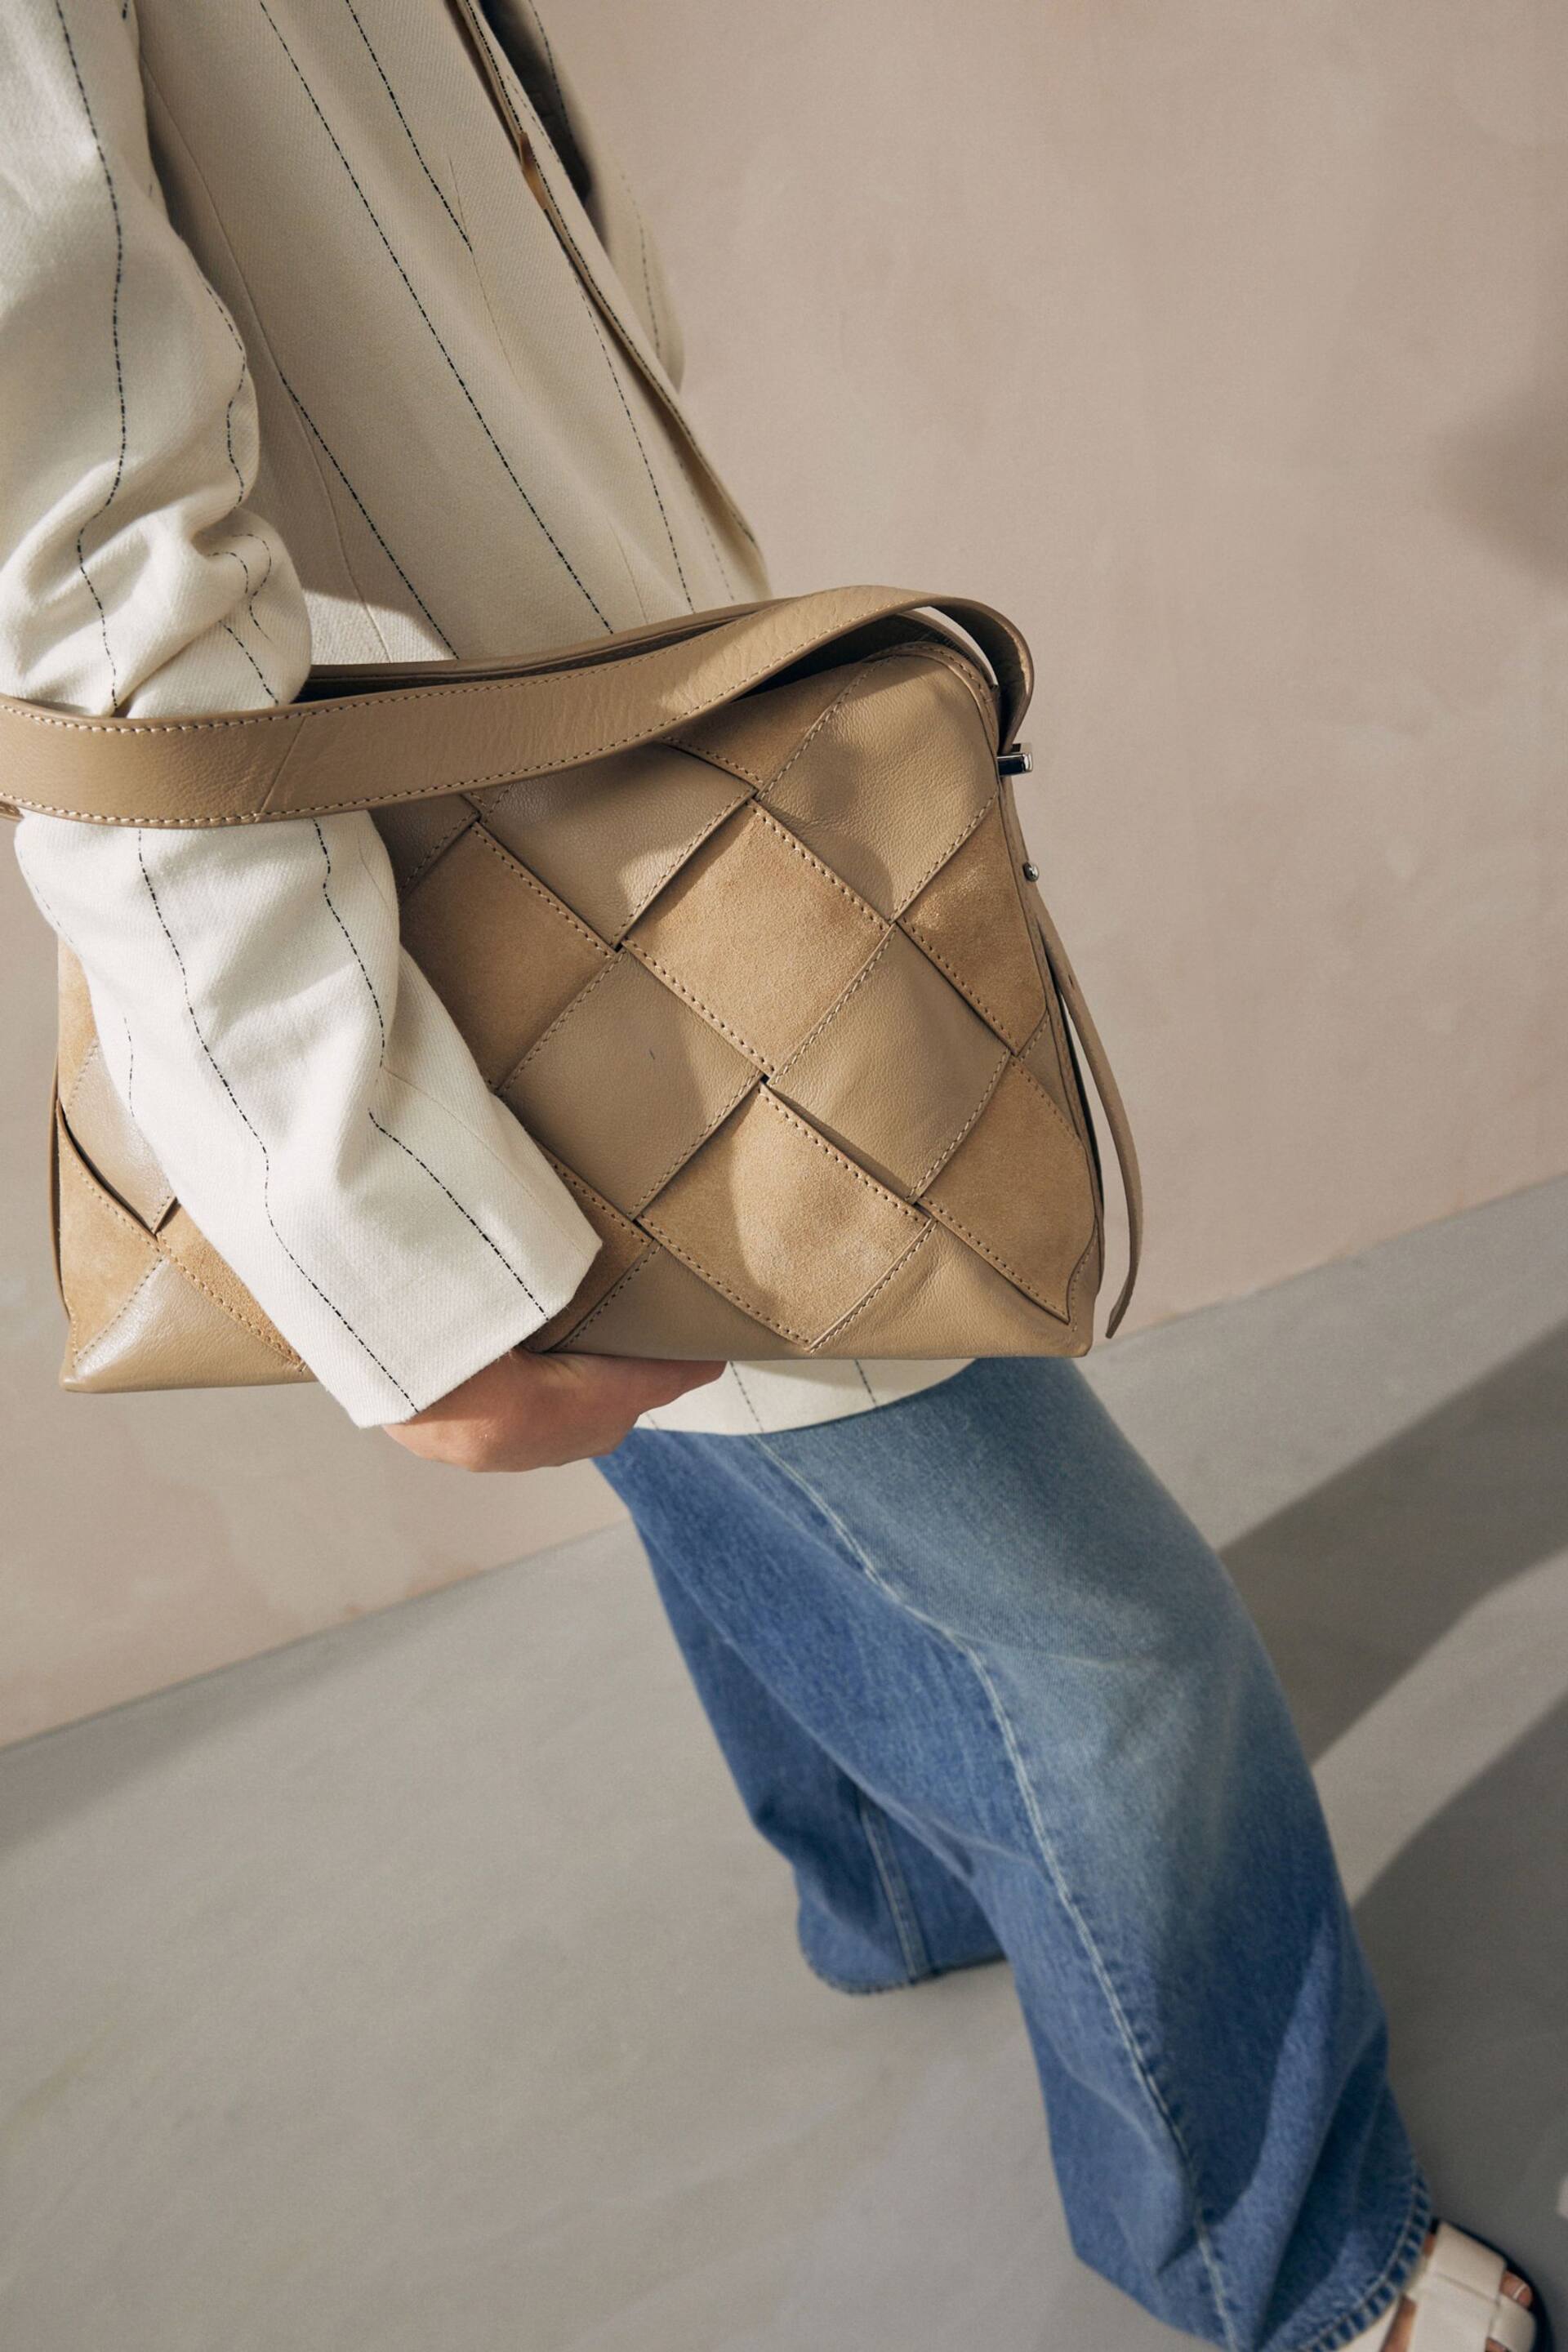 Neutral/Tan Leather Weave Shoulder Bag - Image 3 of 4